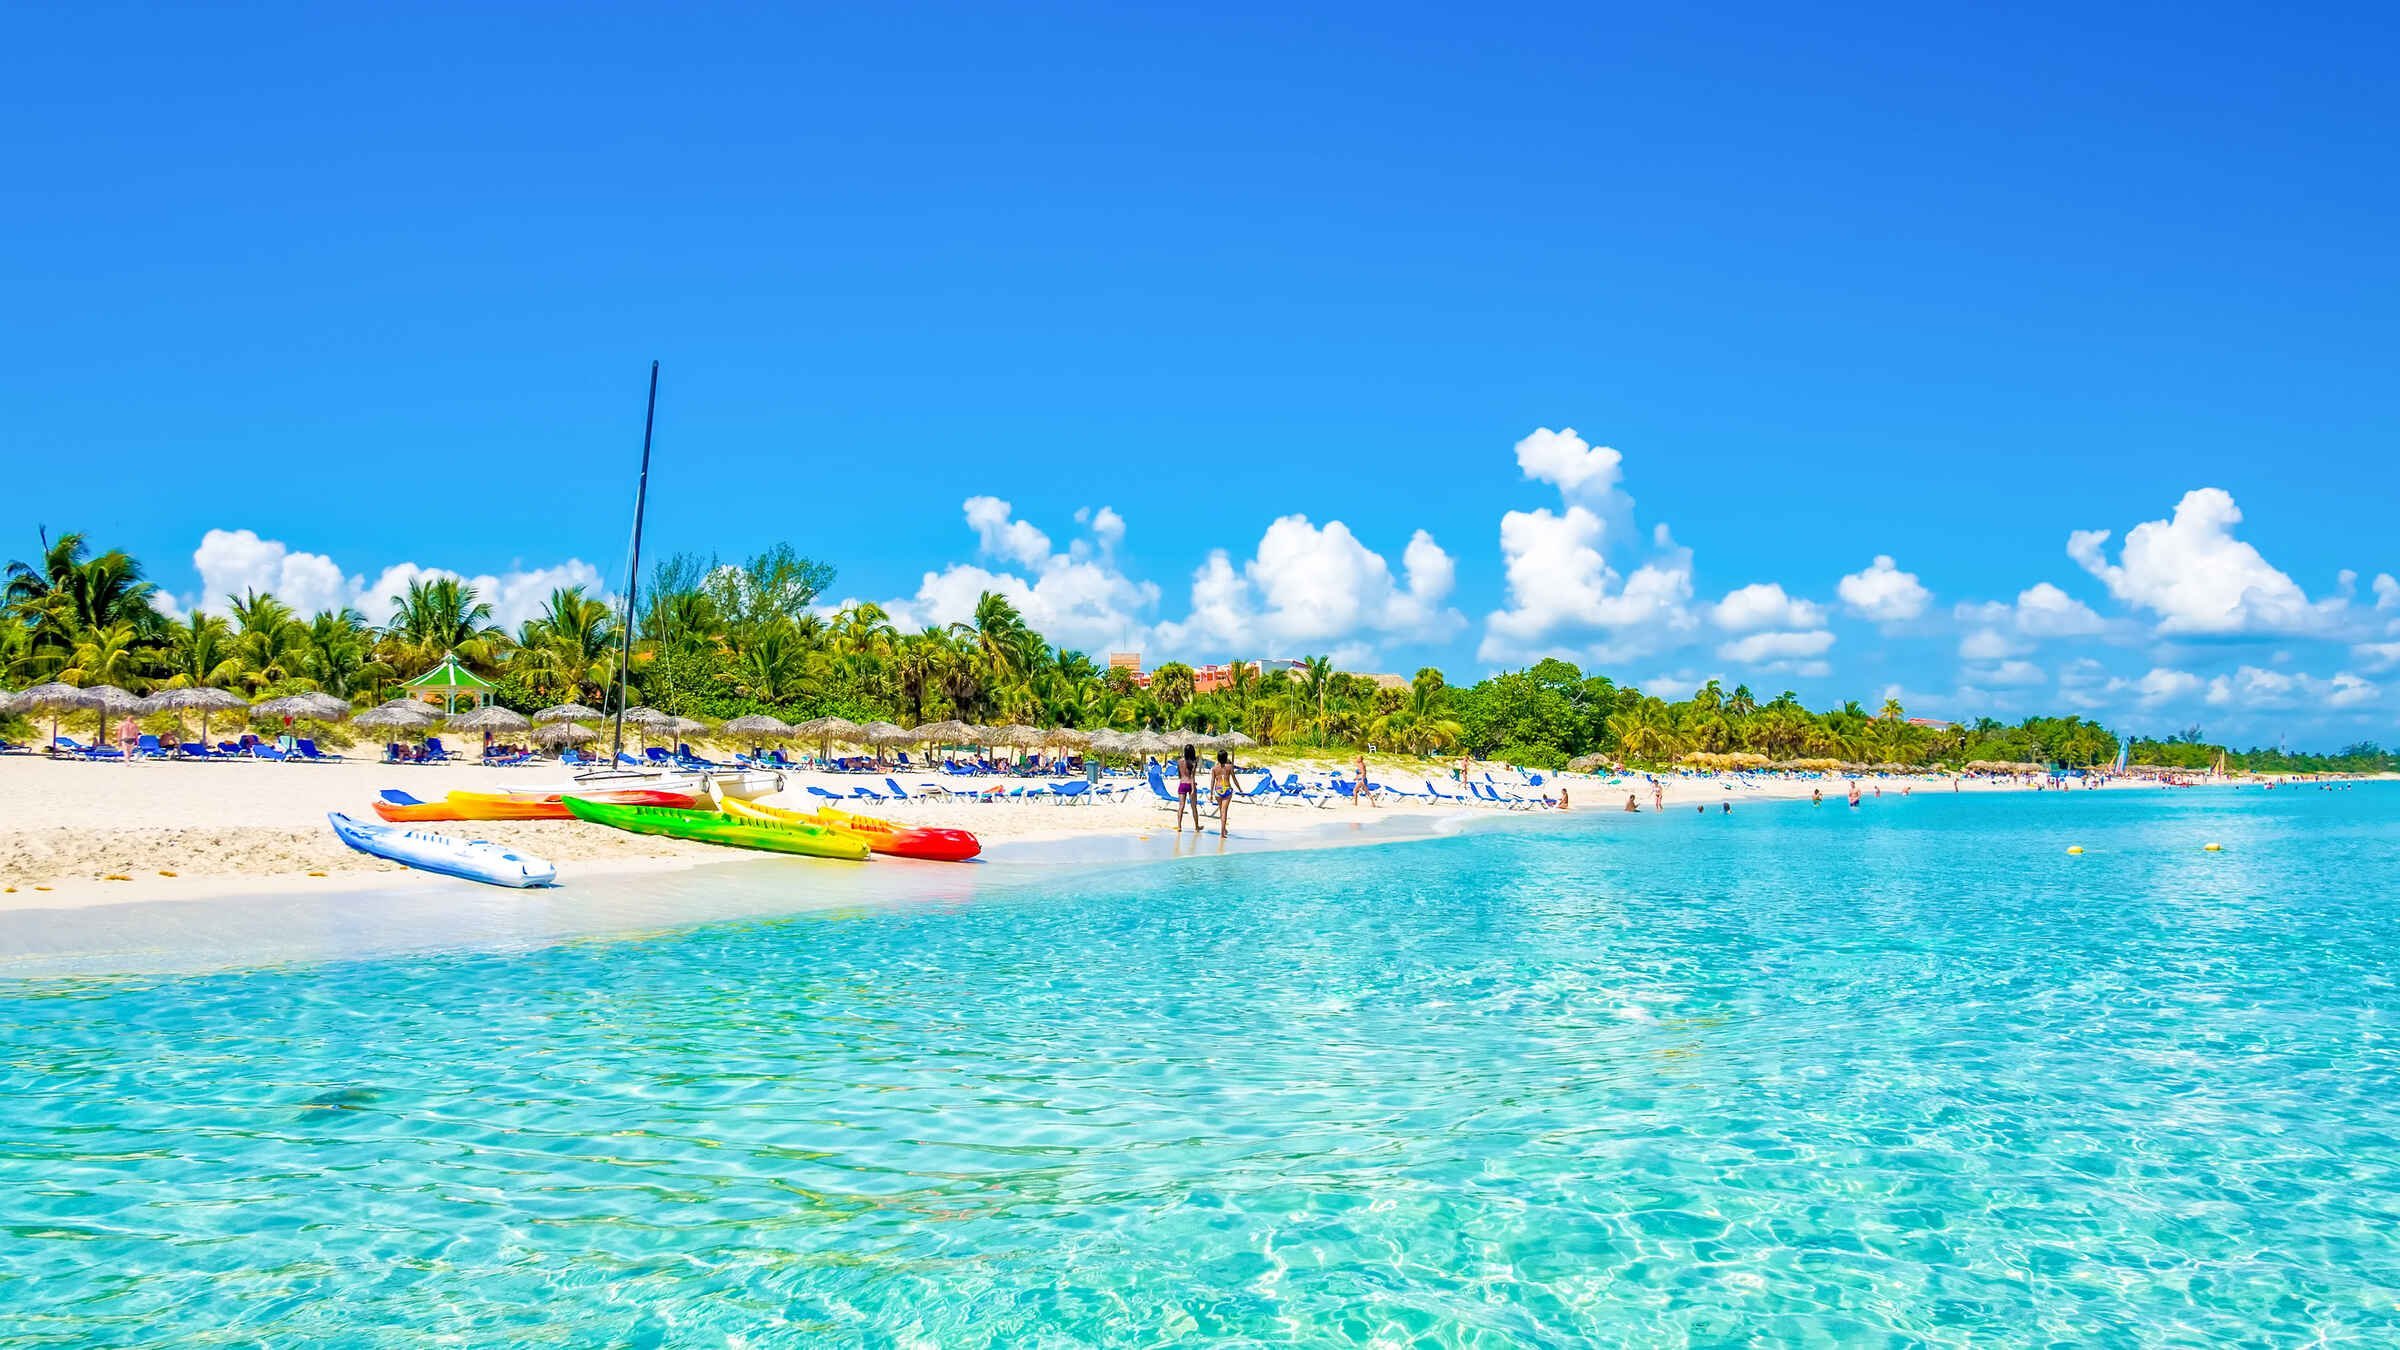 Комфортный пляжный отдых без визы на Кубе